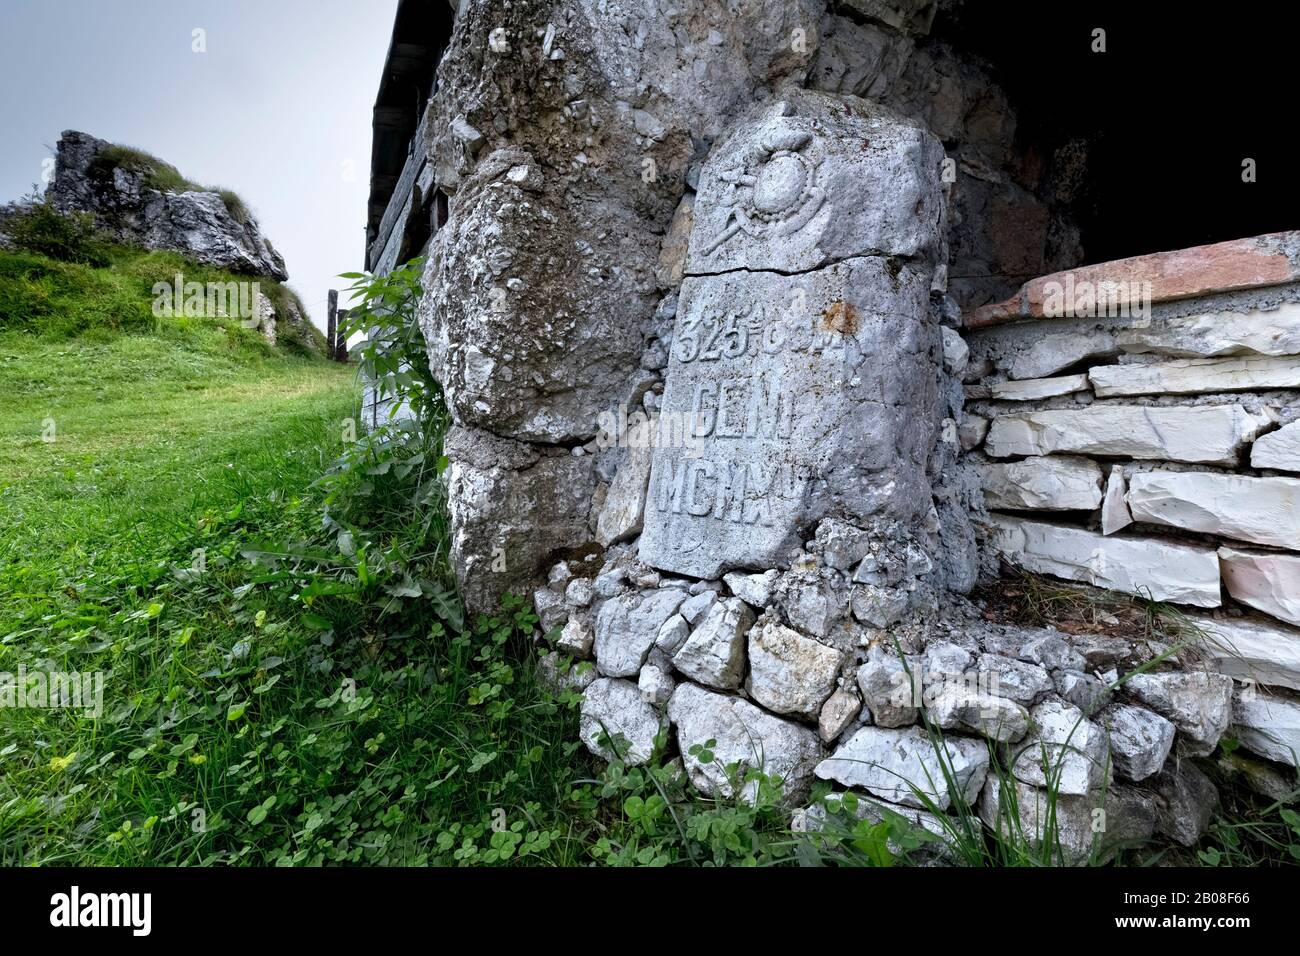 Italian army plaque of the Great War at Malga Baffelan. Campogrosso Pass, Recoaro Terme, Vicenza province, Veneto, Italy, Europe. Stock Photo